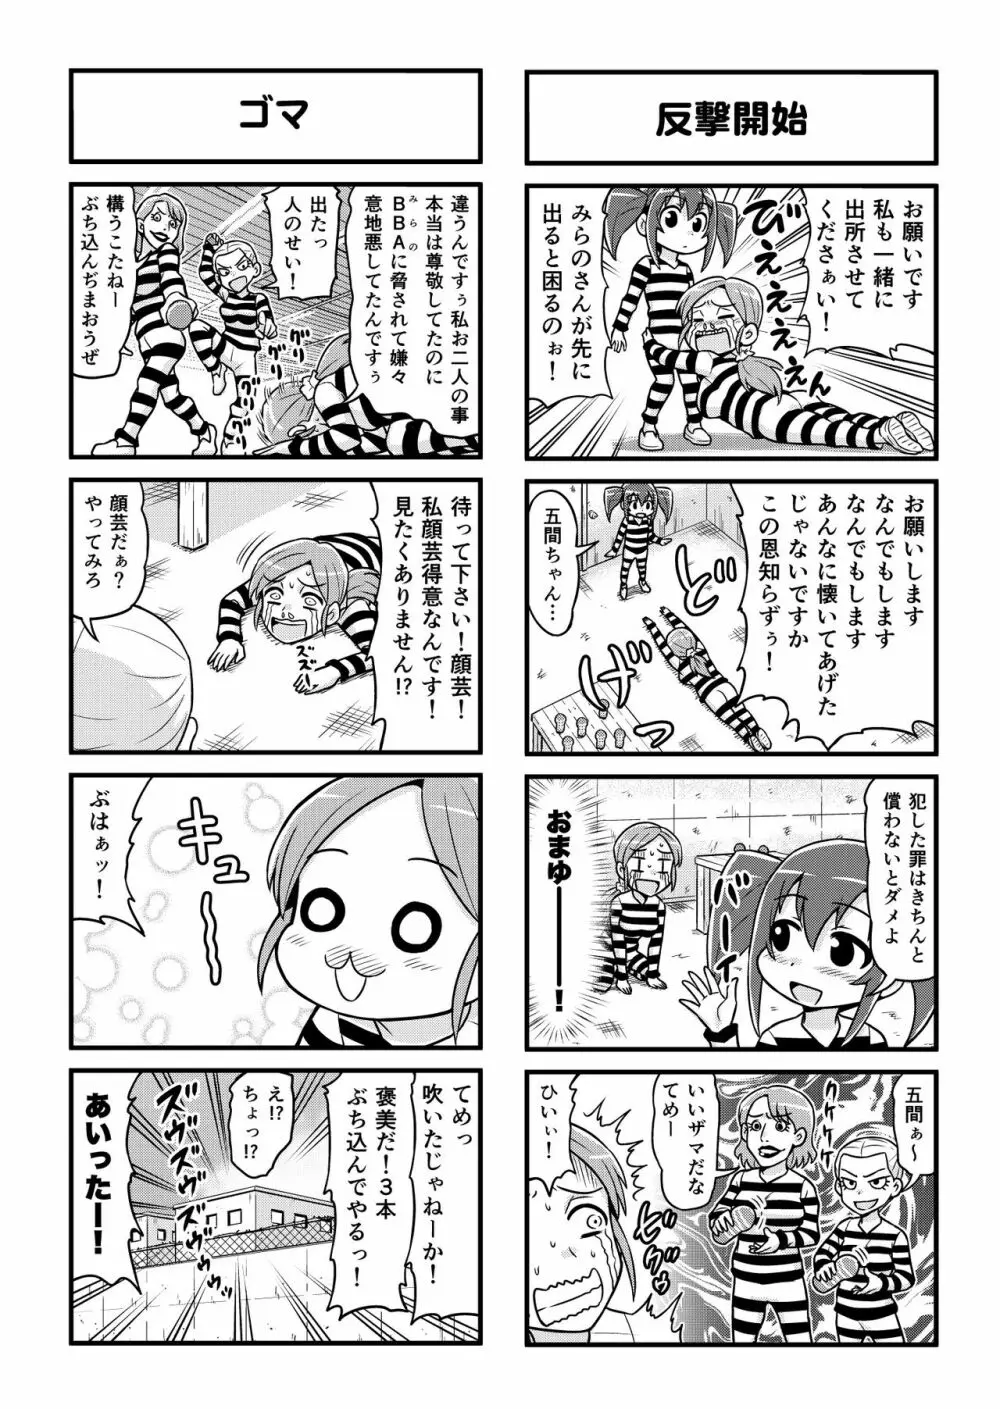 のんきBOY 1-41 251ページ